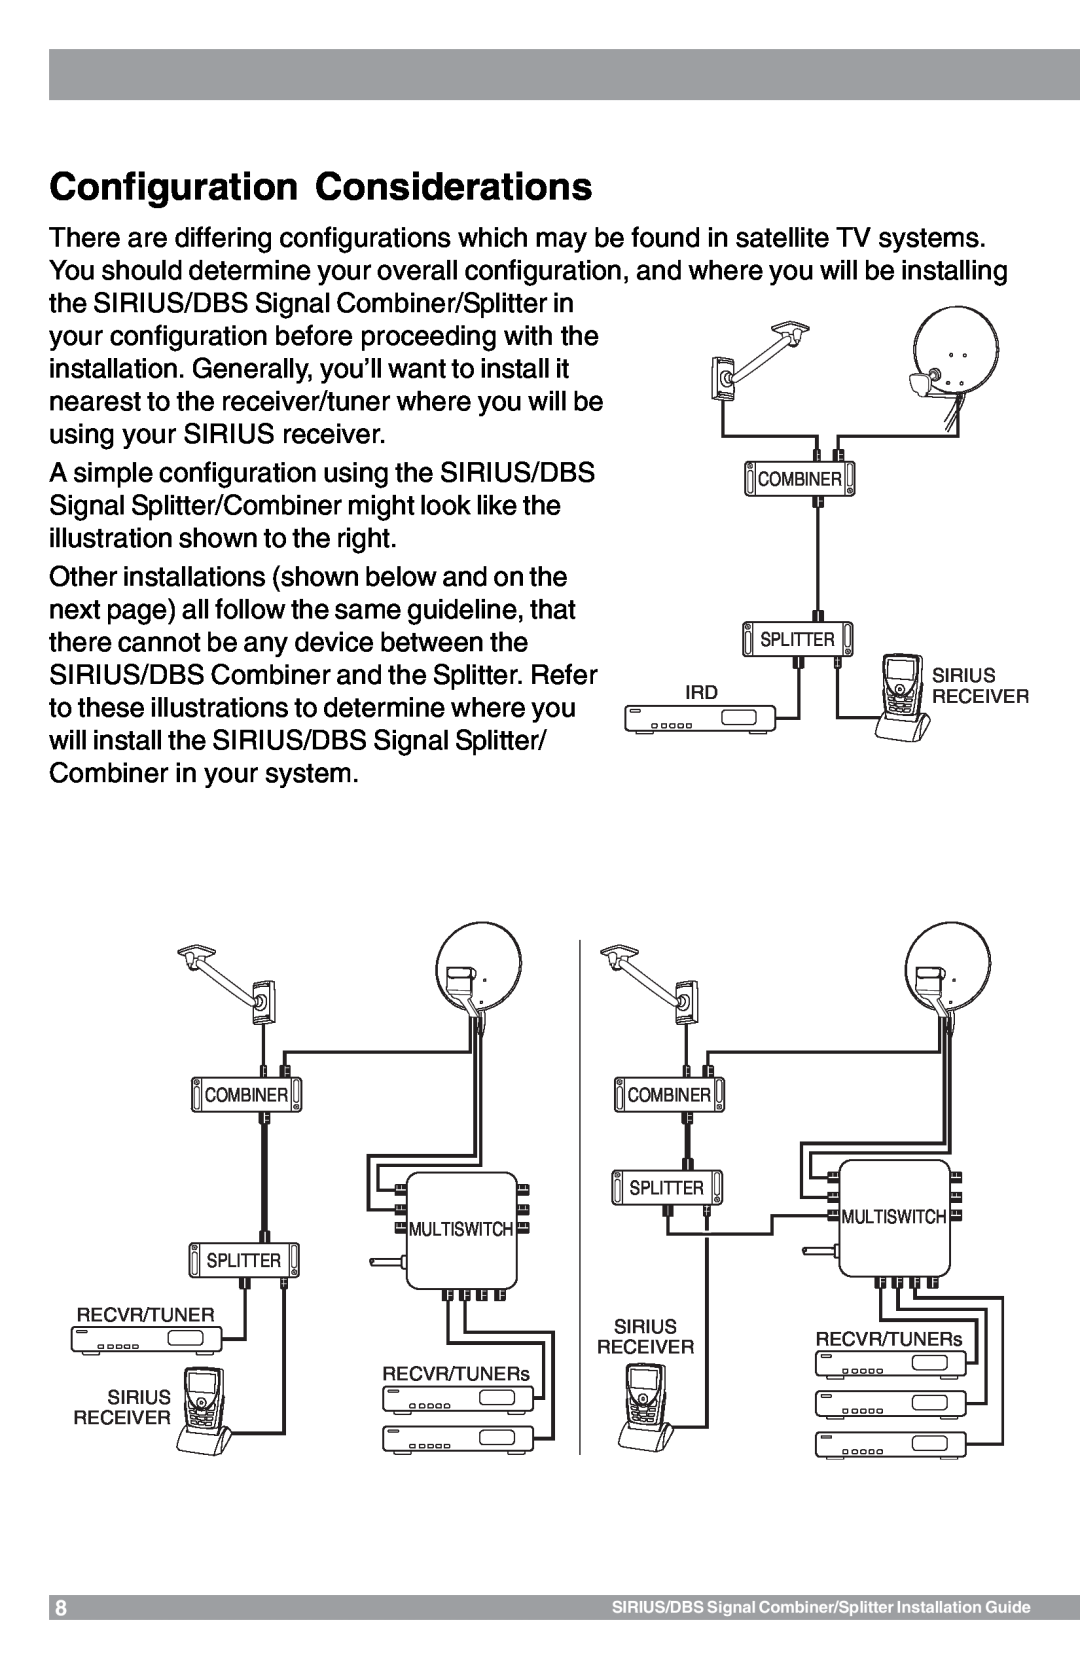 Sirius Satellite Radio SR-100C manual Configuration Considerations 